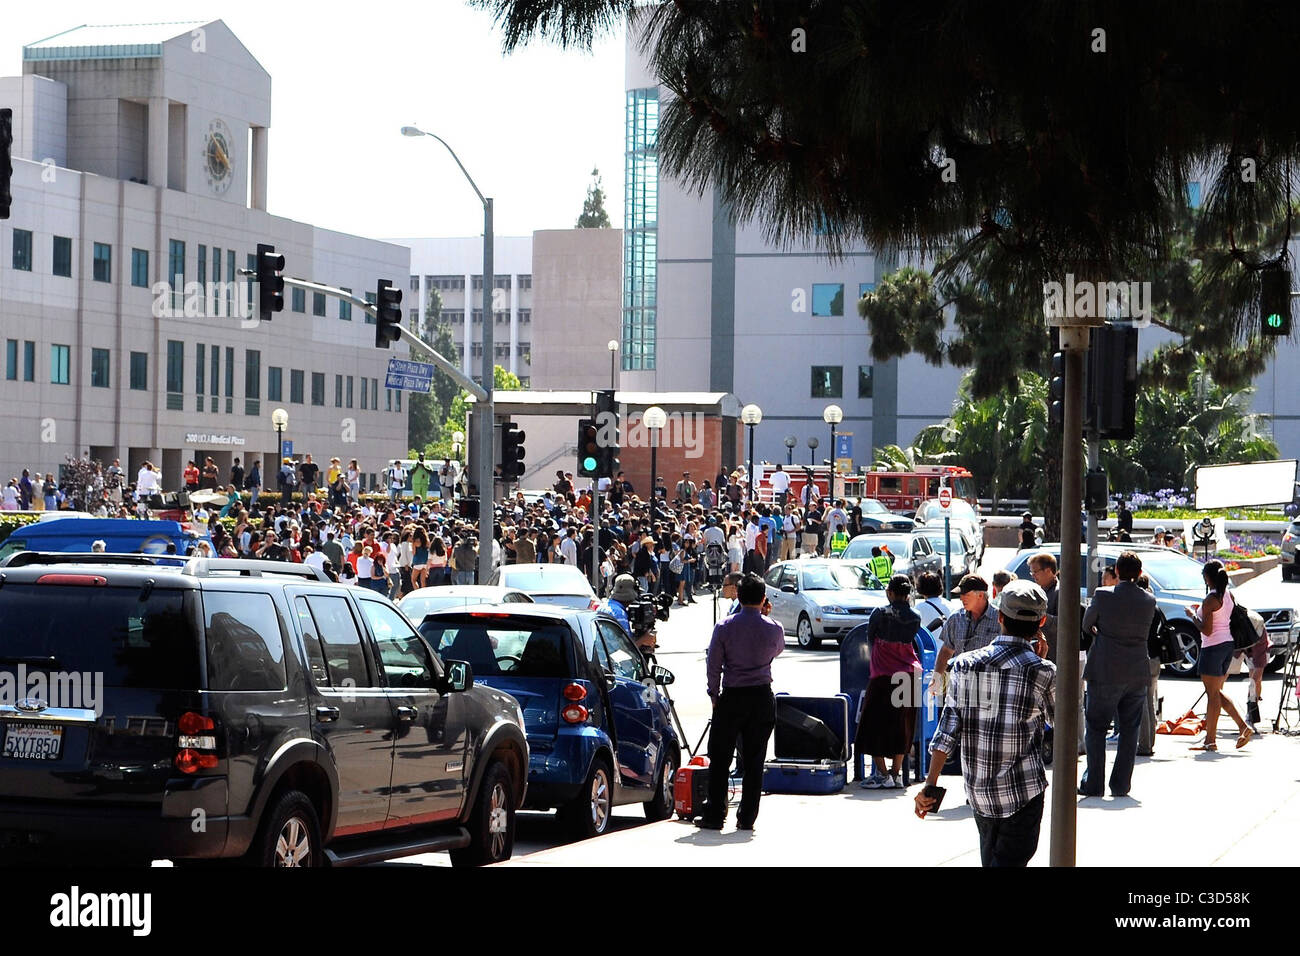 Des foules se rassemblent à l'extérieur de l'atmosphère du centre médical UCLA où Michael Jackson a été prise après avoir subi une crise cardiaque mortelle Banque D'Images